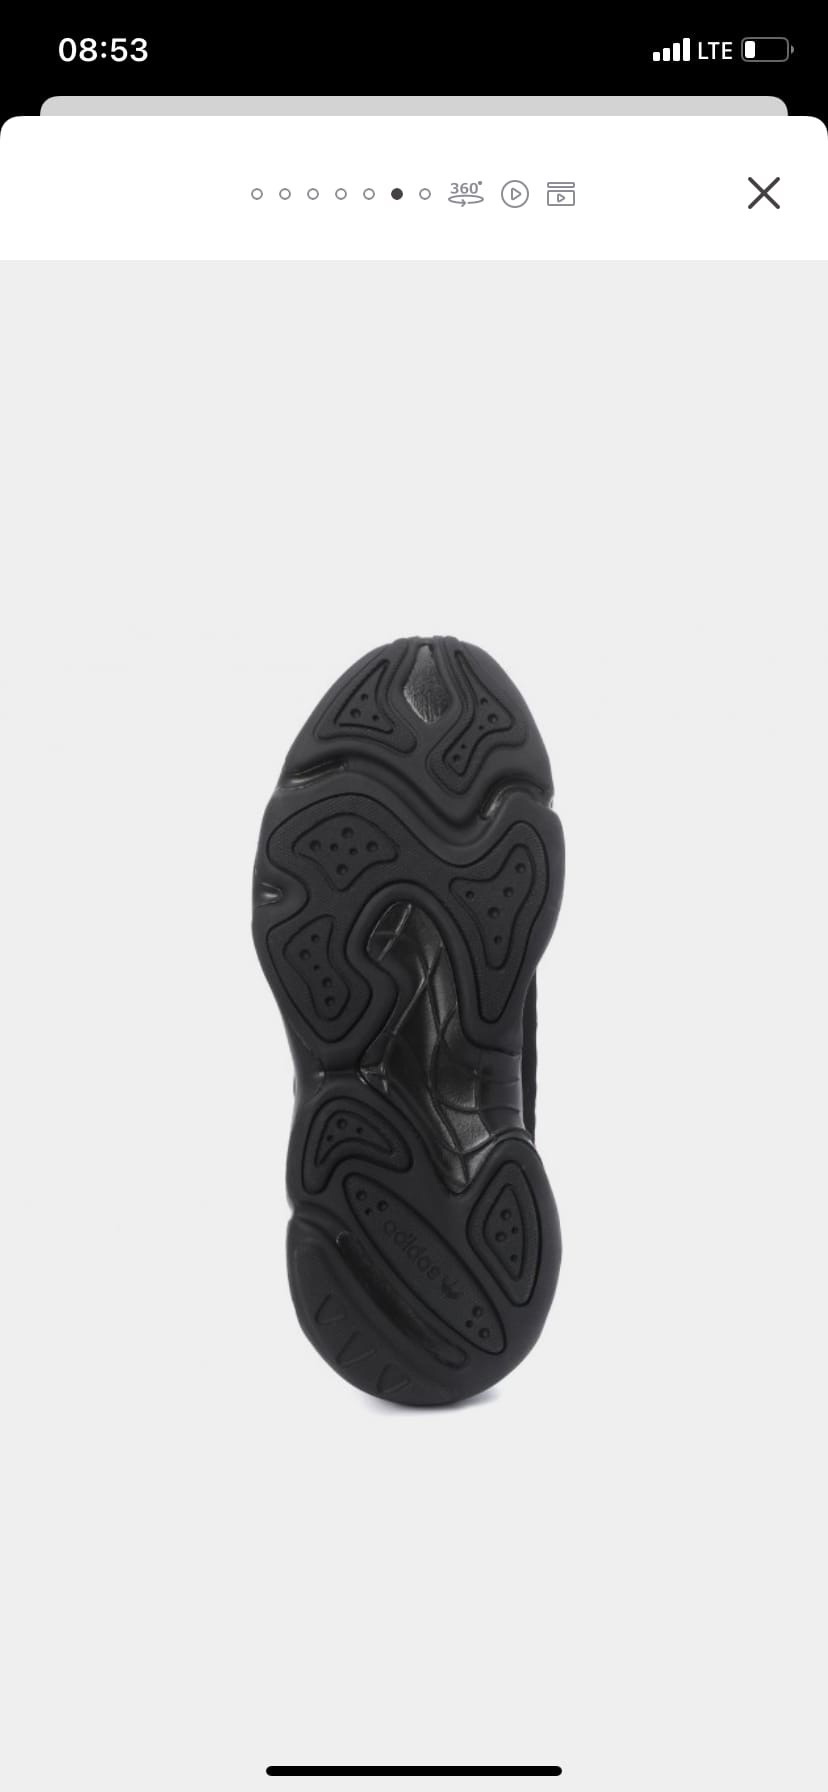 Кроссовки adidas haiwee, размер 5,5 (38)